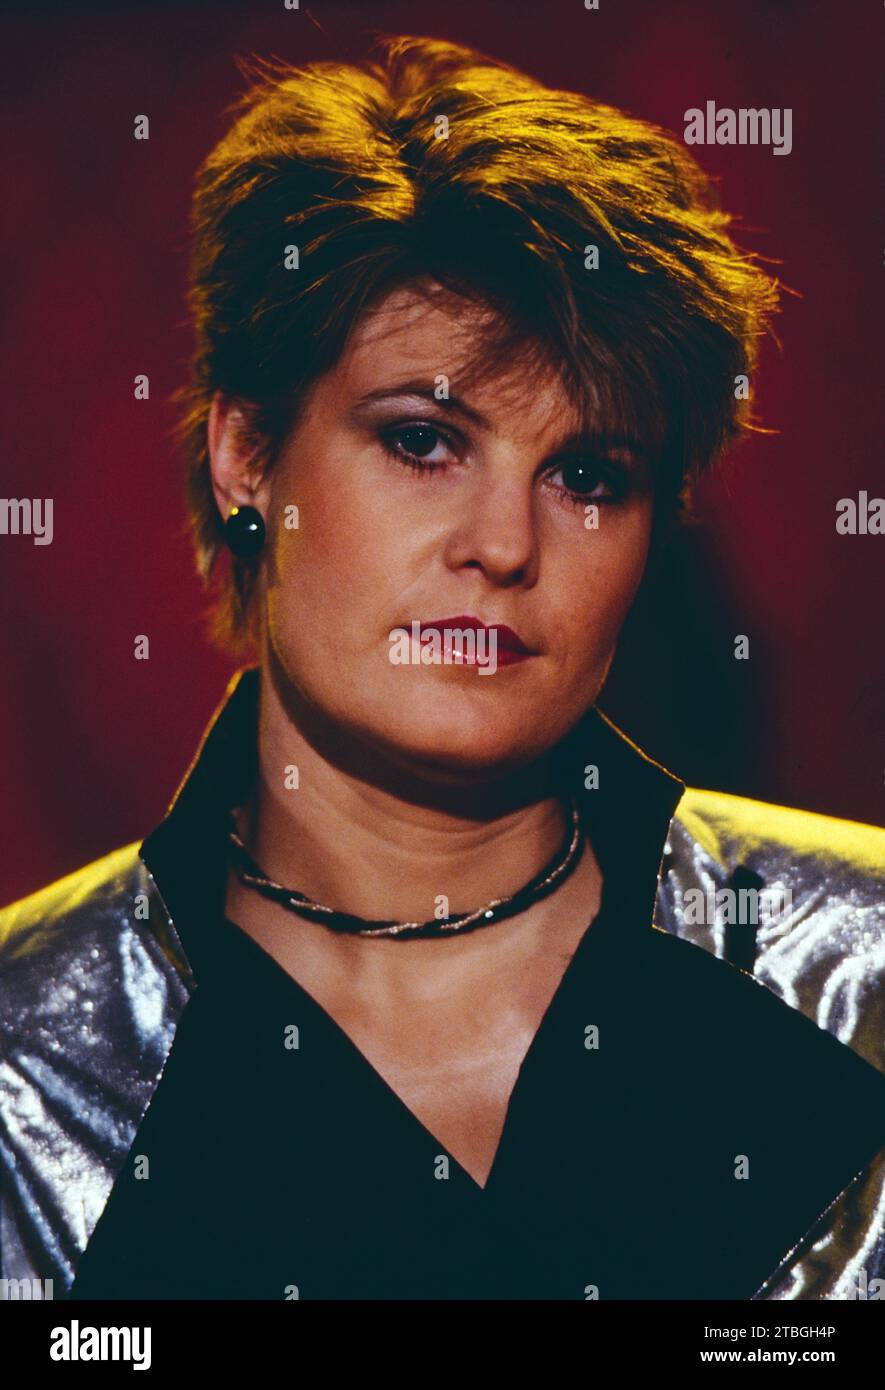 Hazell Dean, britische Pop Sängerin, Portrait, Deutschland, 1984. Hazell Dean, British Pop singer, portrait, Germany, 1984. Stock Photo